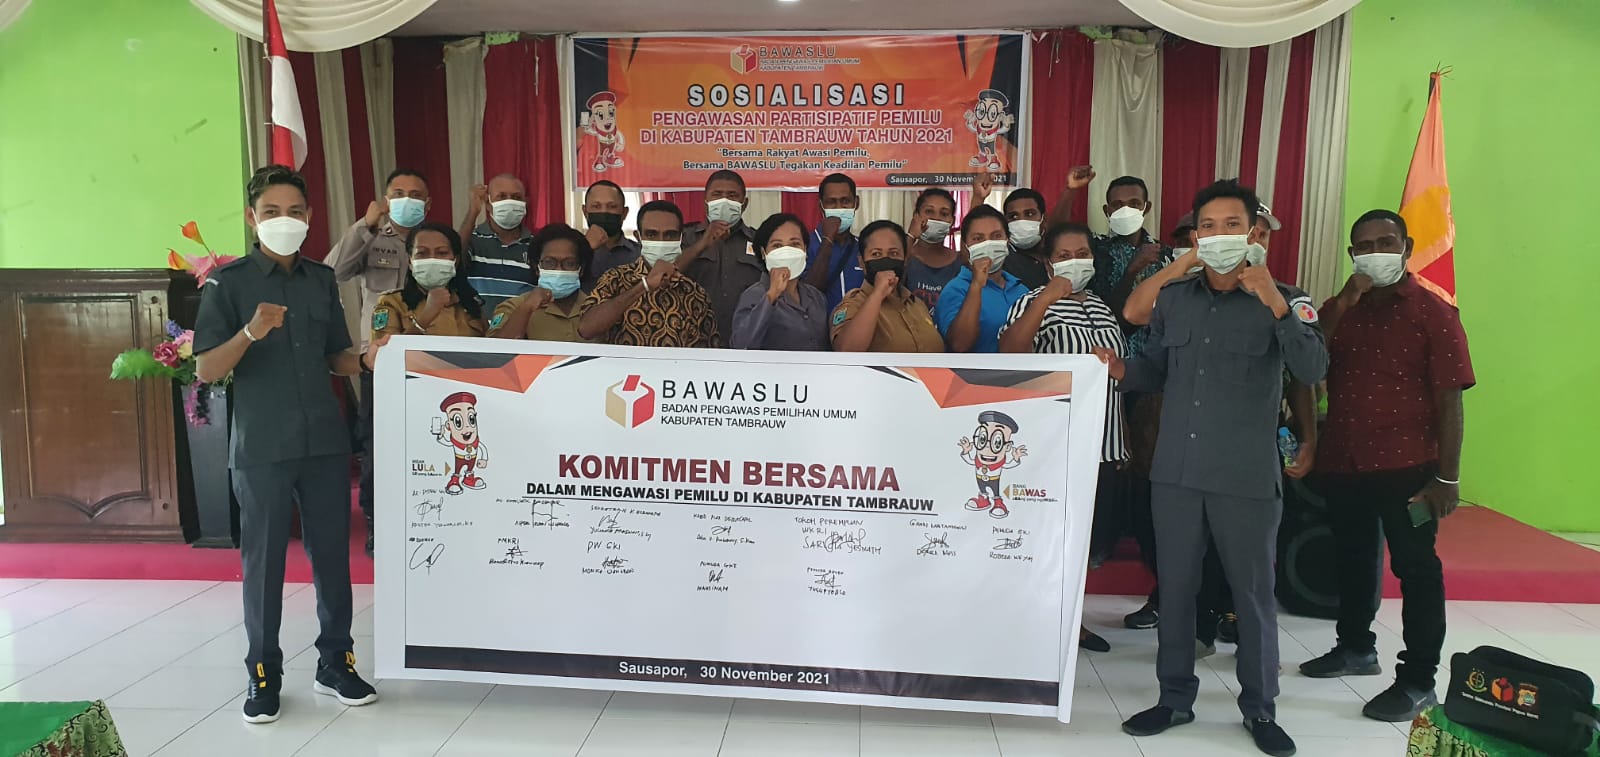 Penandatanganan Komitmen Bersama Dalam Pengawasan Pemilu di Kabupaten Tambrauw